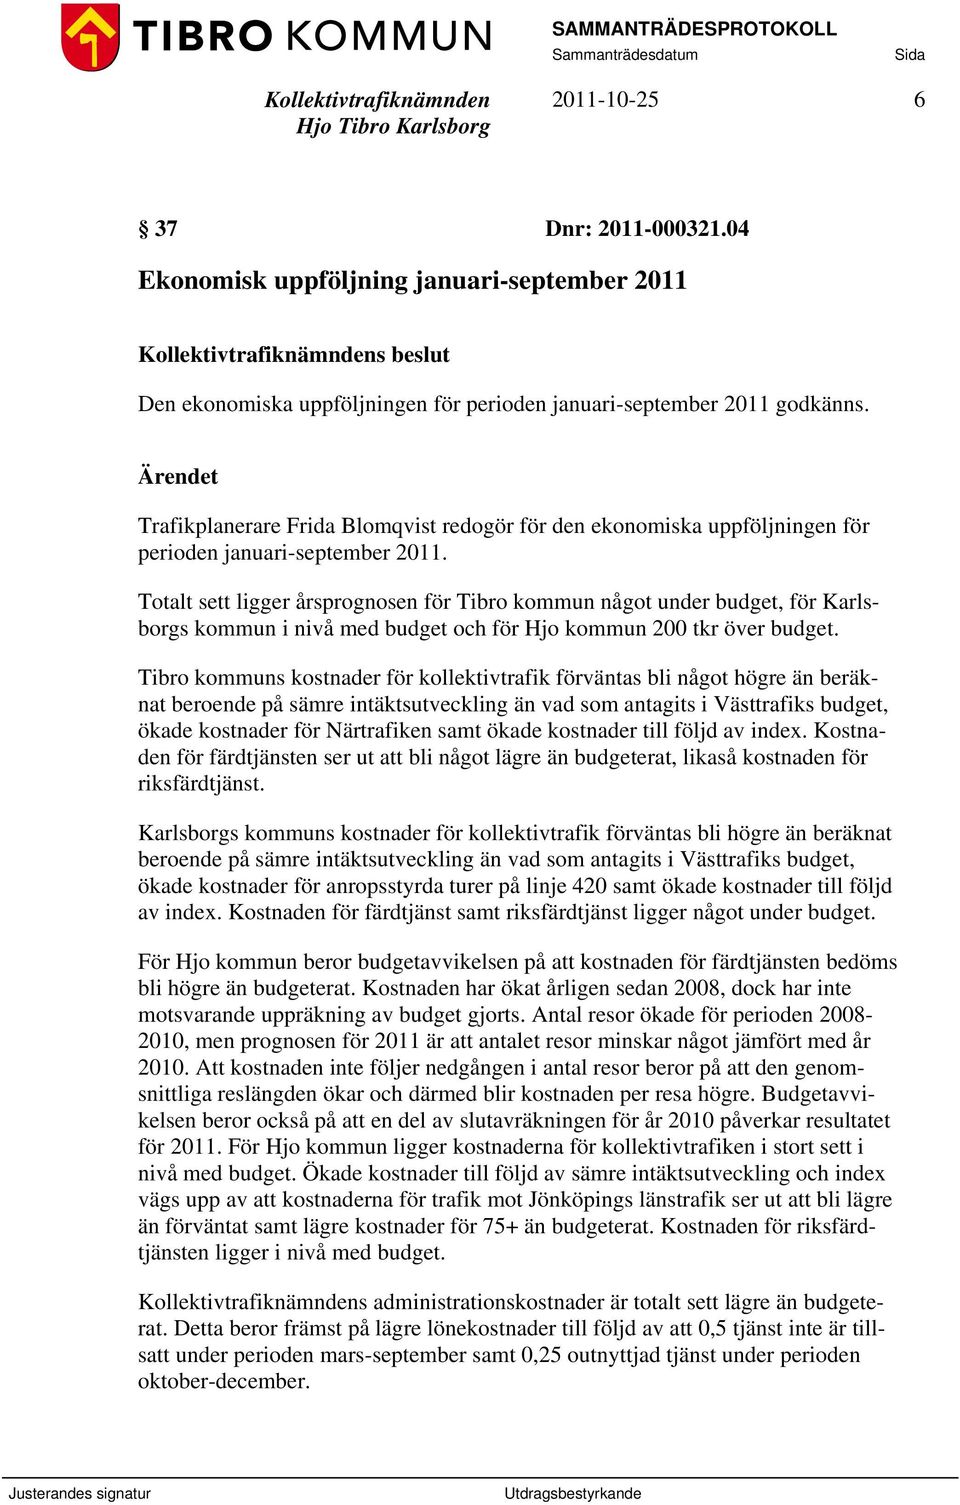 Totalt sett ligger årsprognosen för Tibro kommun något under budget, för Karlsborgs kommun i nivå med budget och för Hjo kommun 200 tkr över budget.